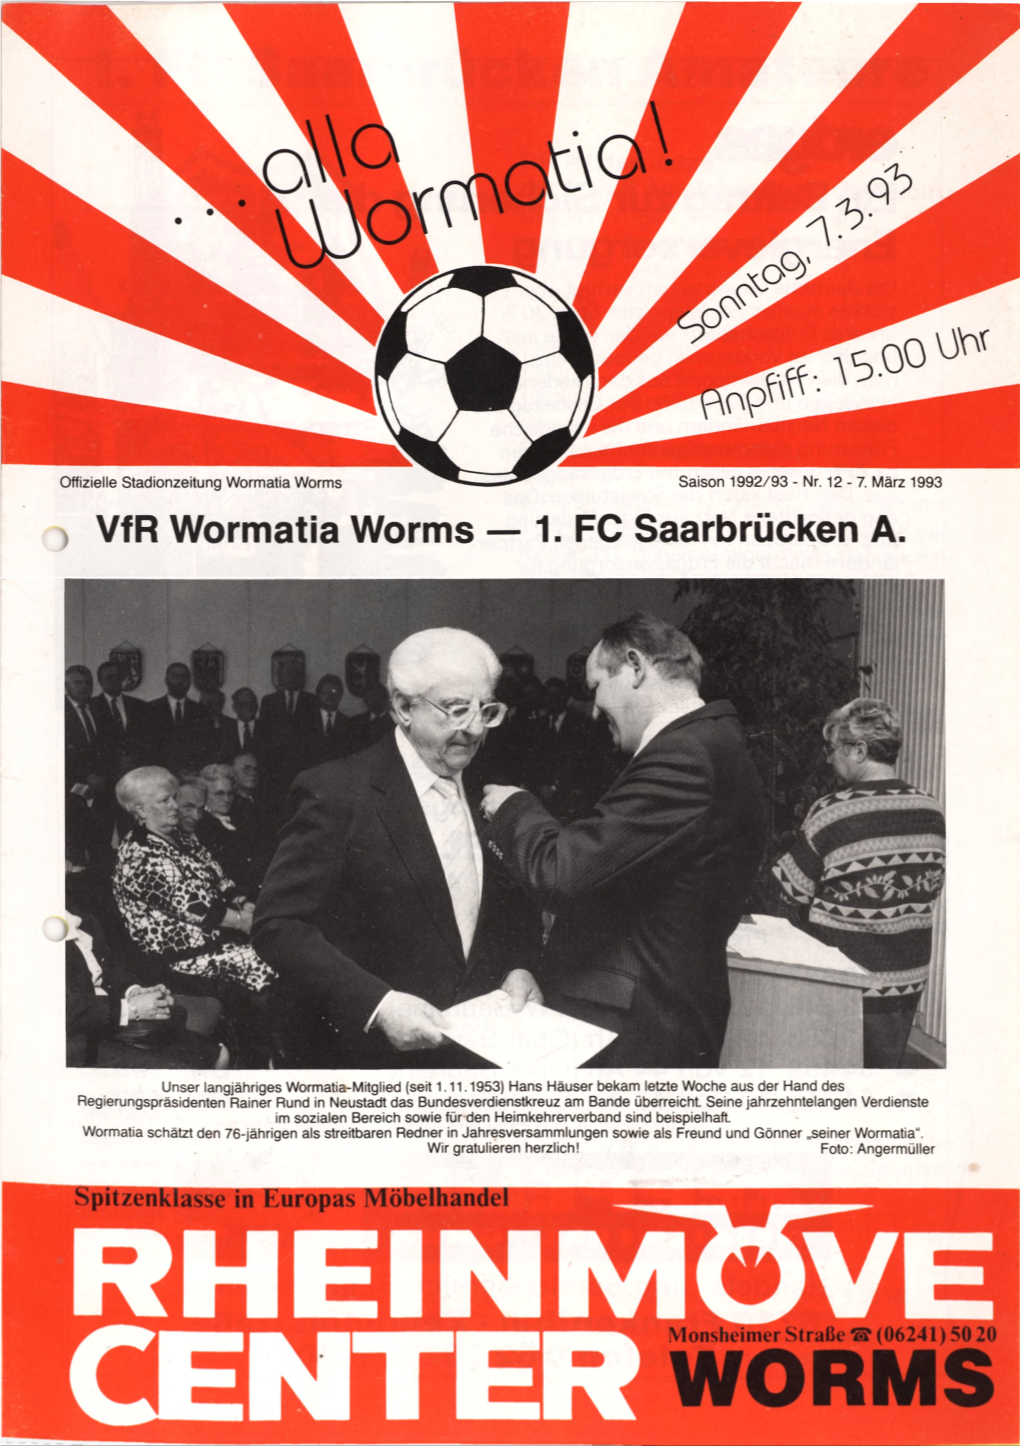 Vfr Wormatia Worms — 1. FC Saarbrücken A